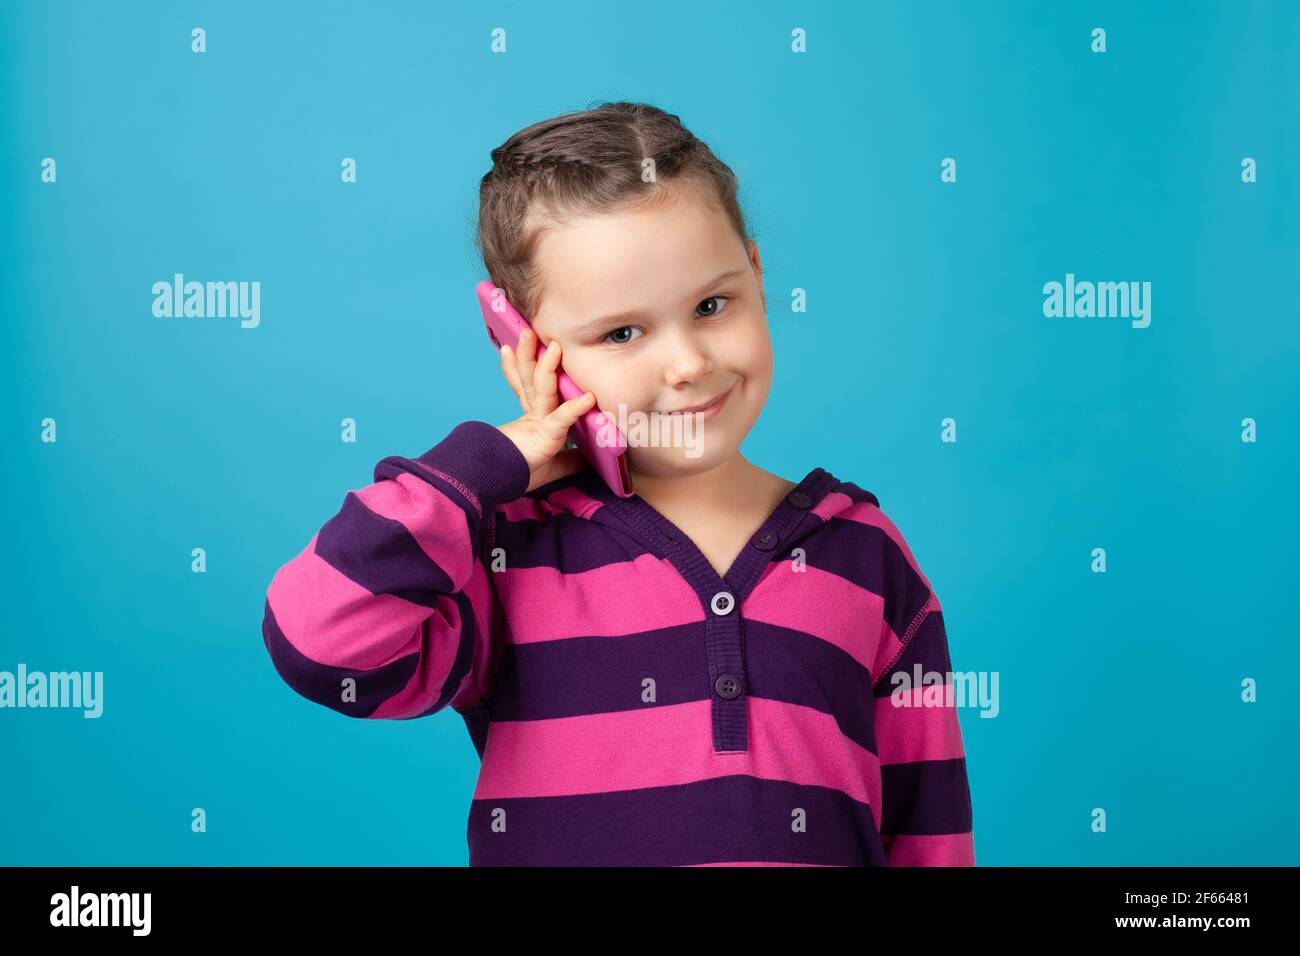 primo piano ritratto di una bella bambina sorridente con pigtail che tiene un telefono vicino all'orecchio ed effettua una telefonata, isolato su uno sfondo blu Foto Stock